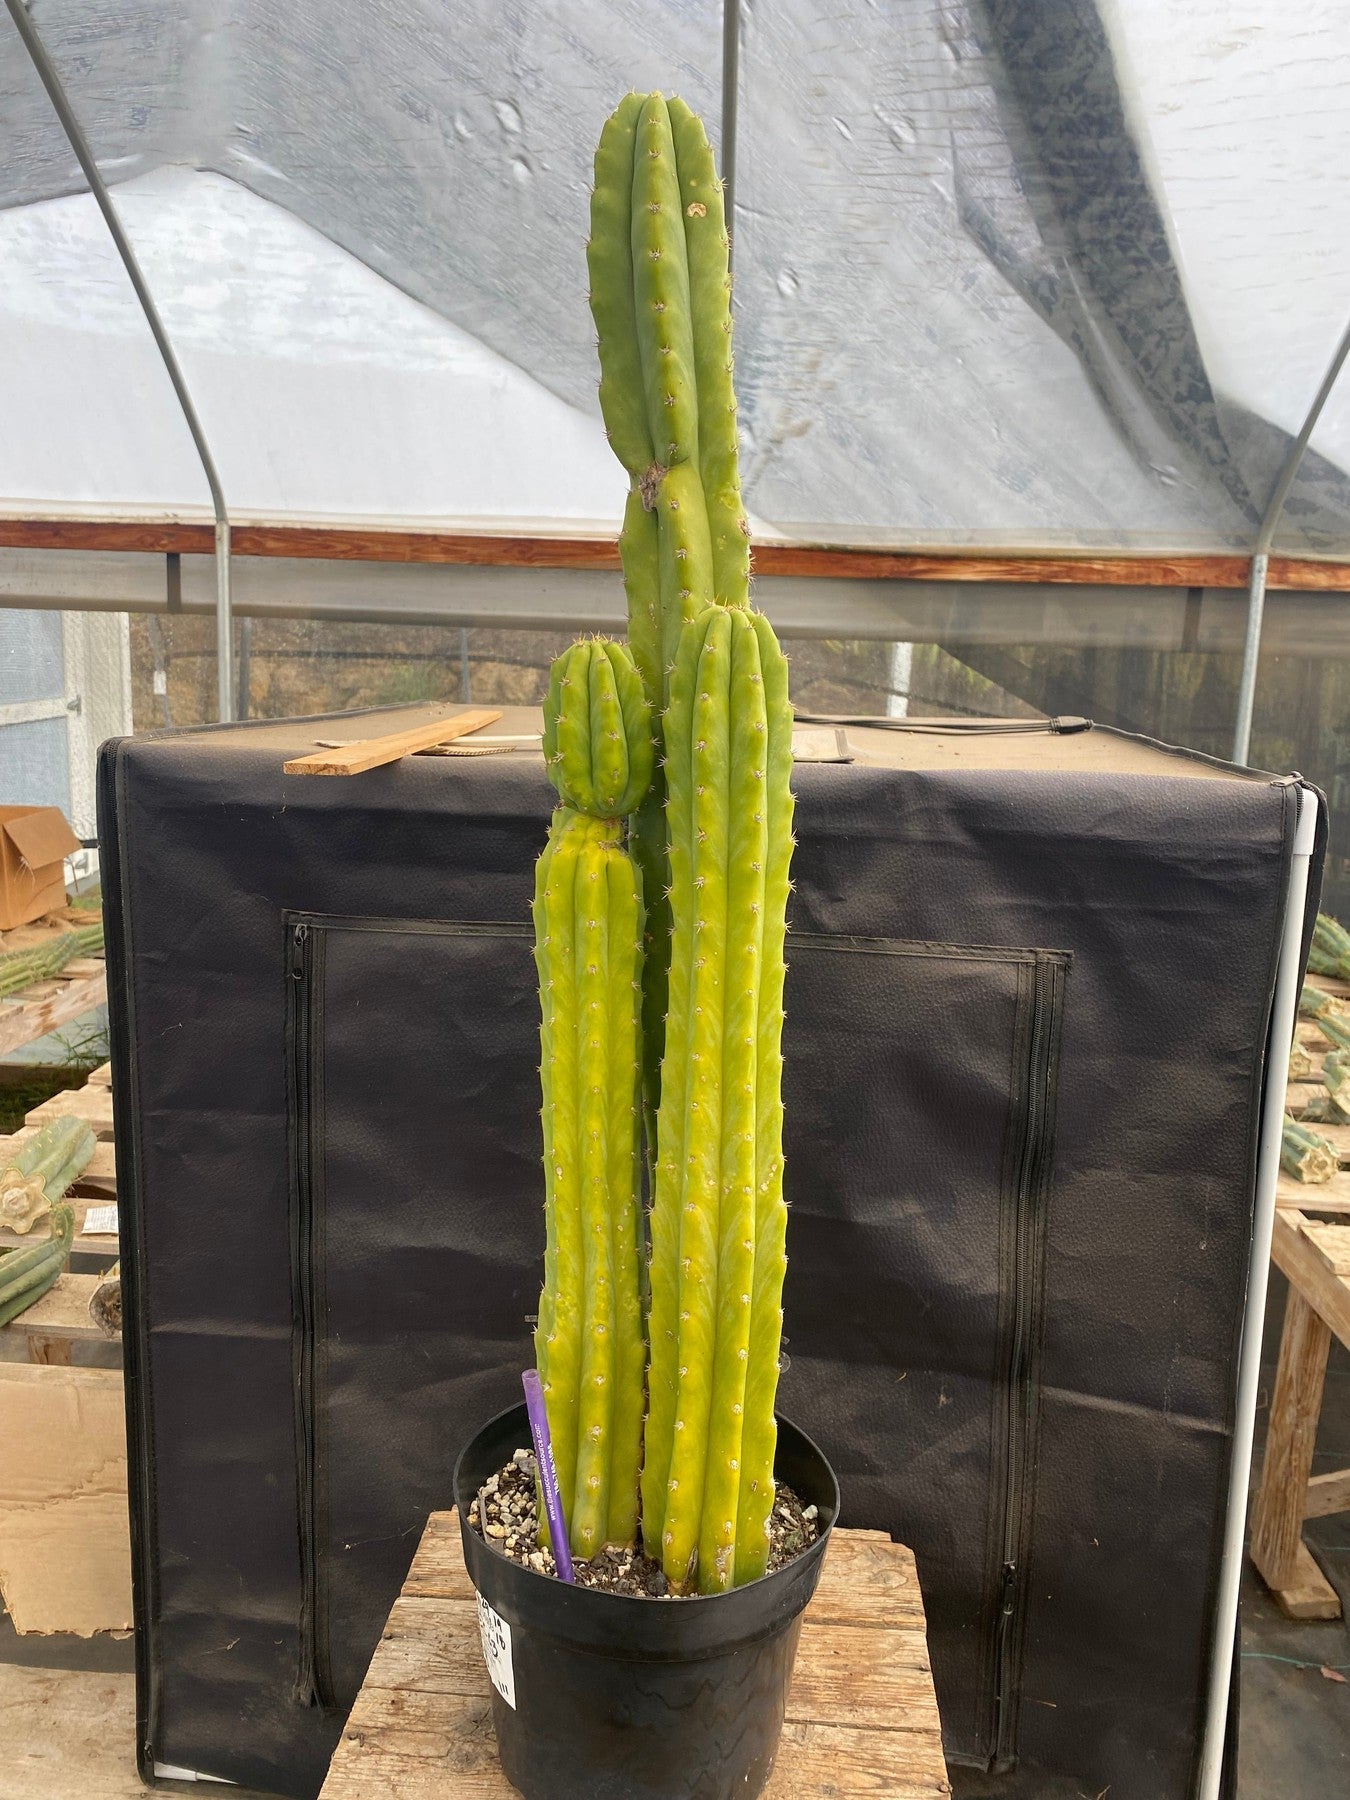 #EC03 exact Trichocereus Pachanoi "PC" Cactus 29,19,18-Cactus - Large - Exact-The Succulent Source